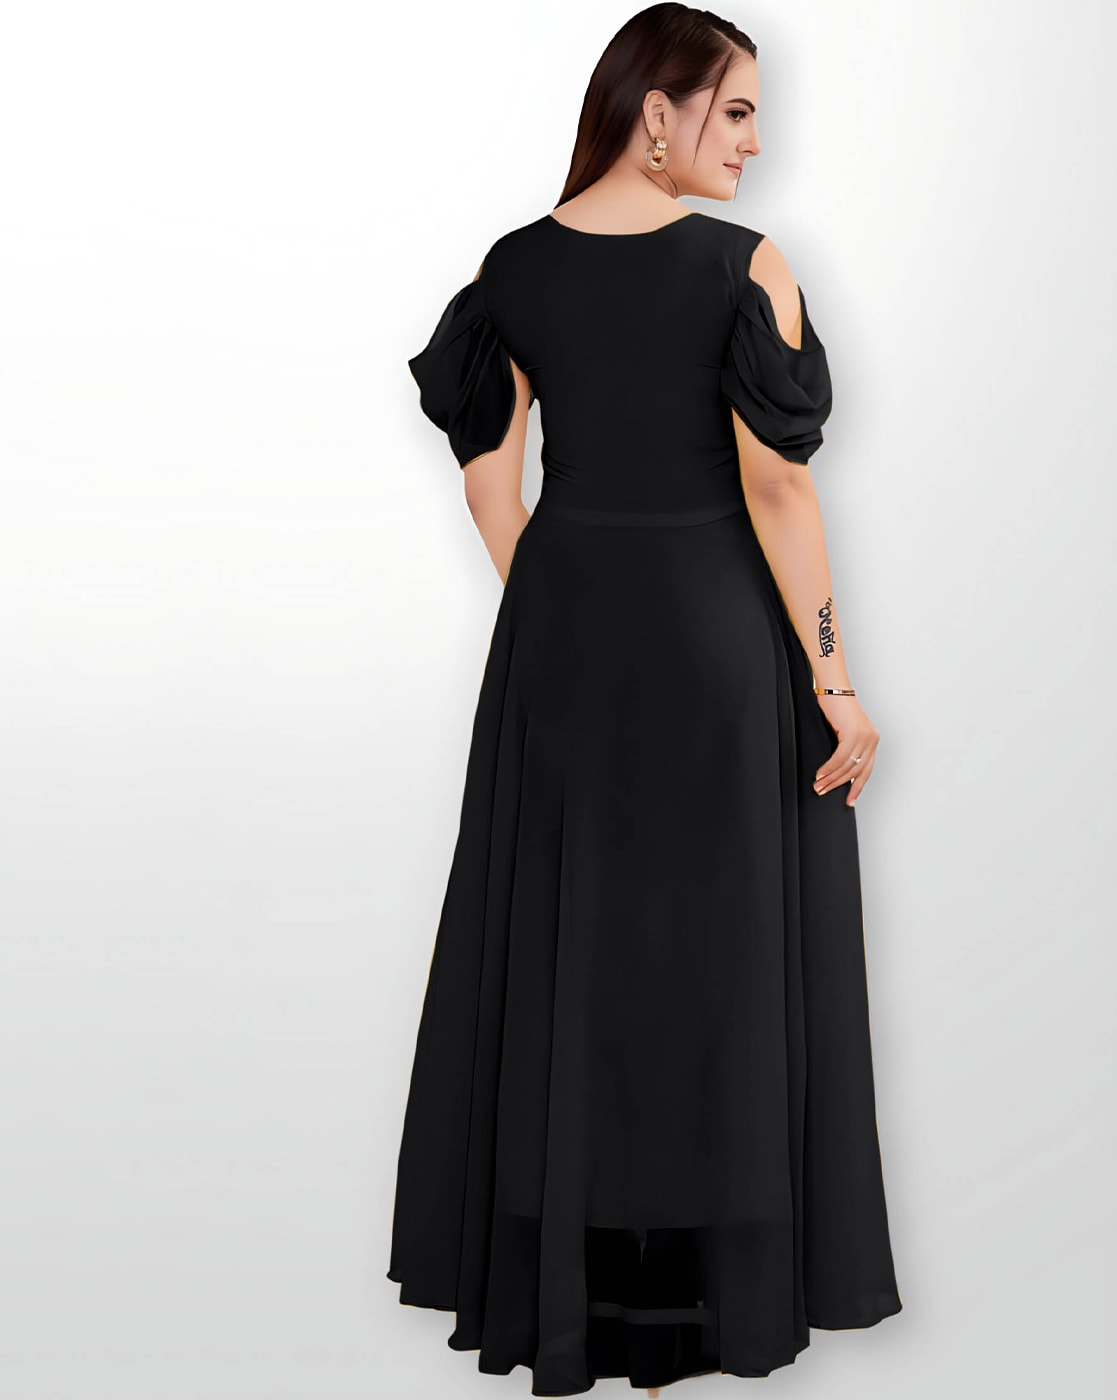 Black Beauty Plus size Dress - LotusLane